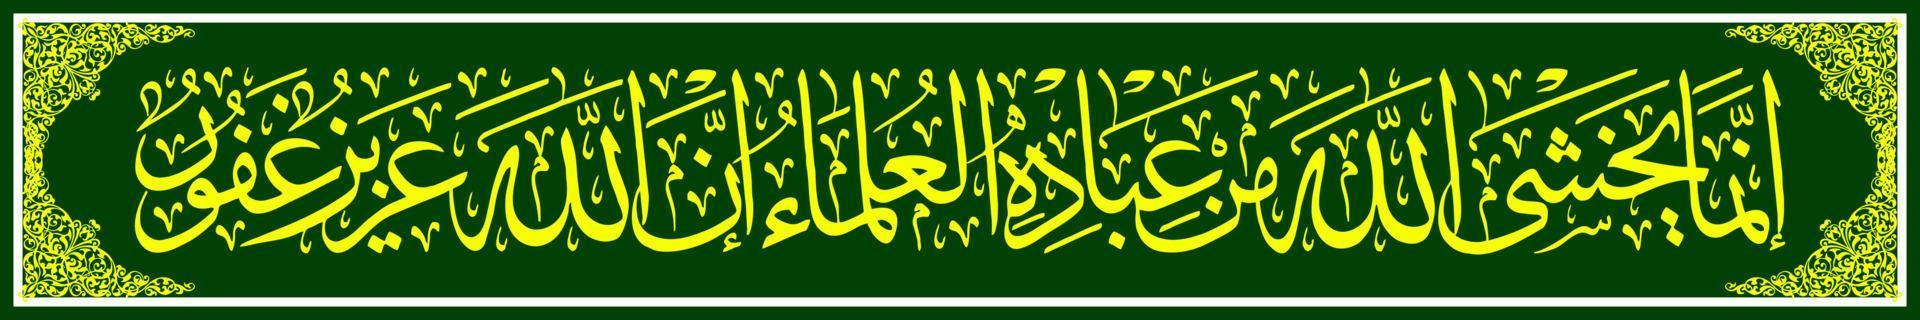 calligraphie arabe, al qur'an sourate fatir 48, traduction parmi les serviteurs d'allah qui le craignent, ne sont que les savants. en effet, allah est puissant, le plus indulgent. vecteur